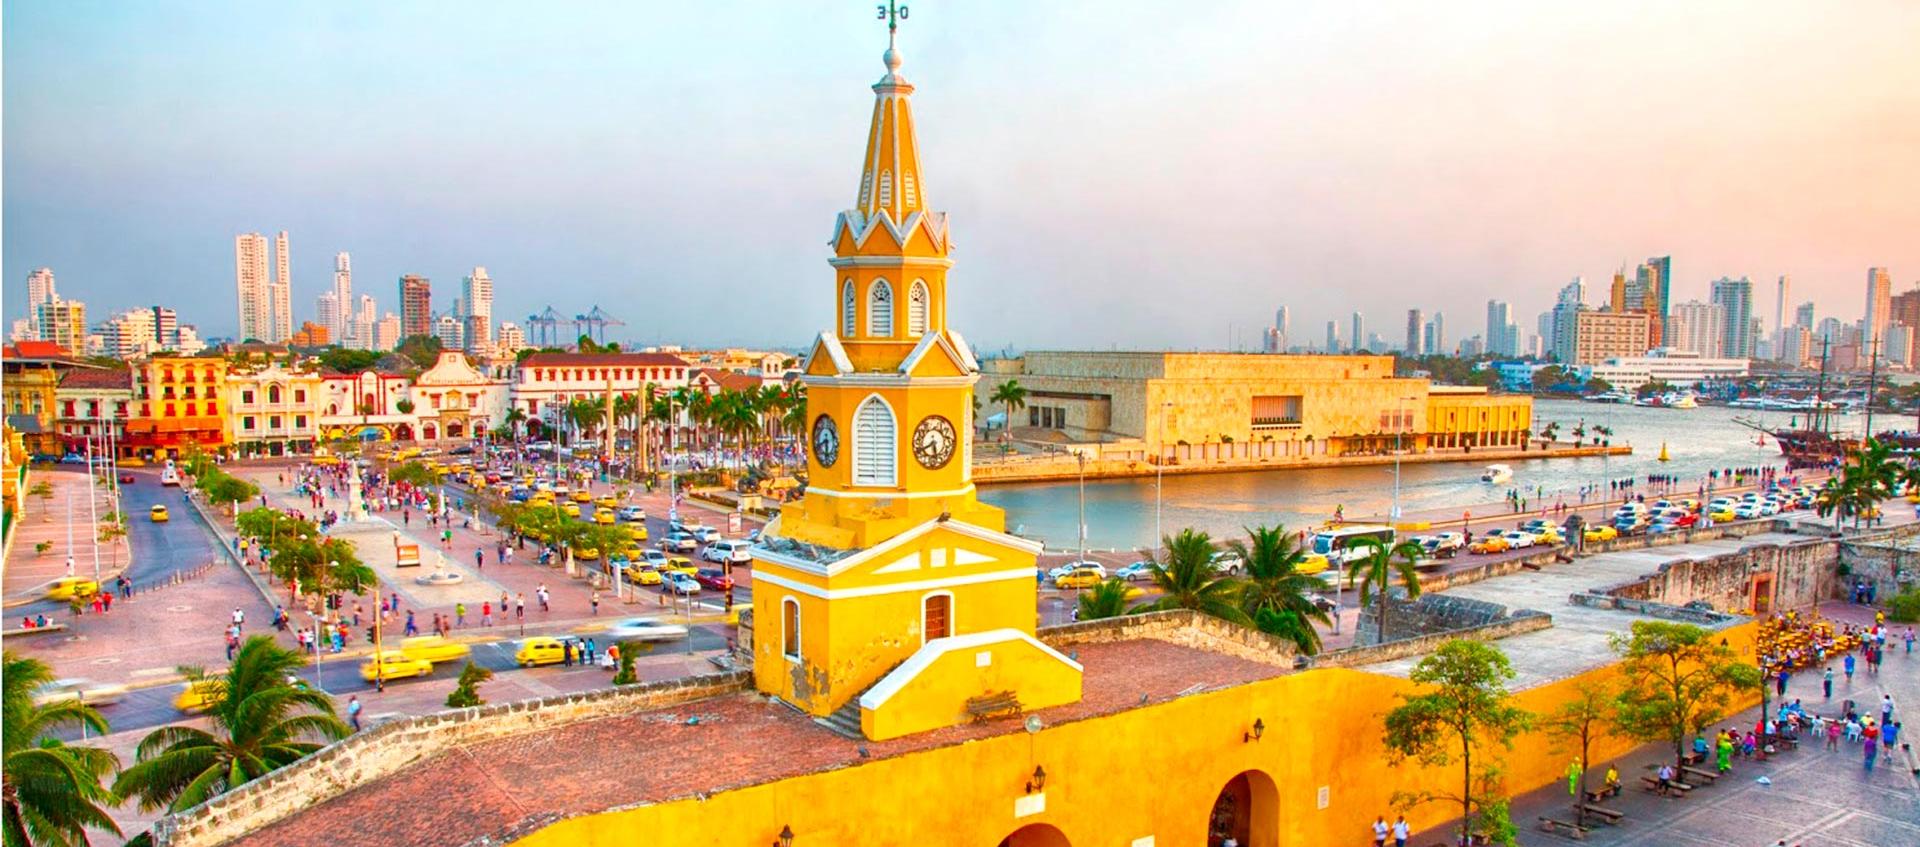 Cartagena fue declarada por la Unesco como Patrimonio de la Humanidad en 1984